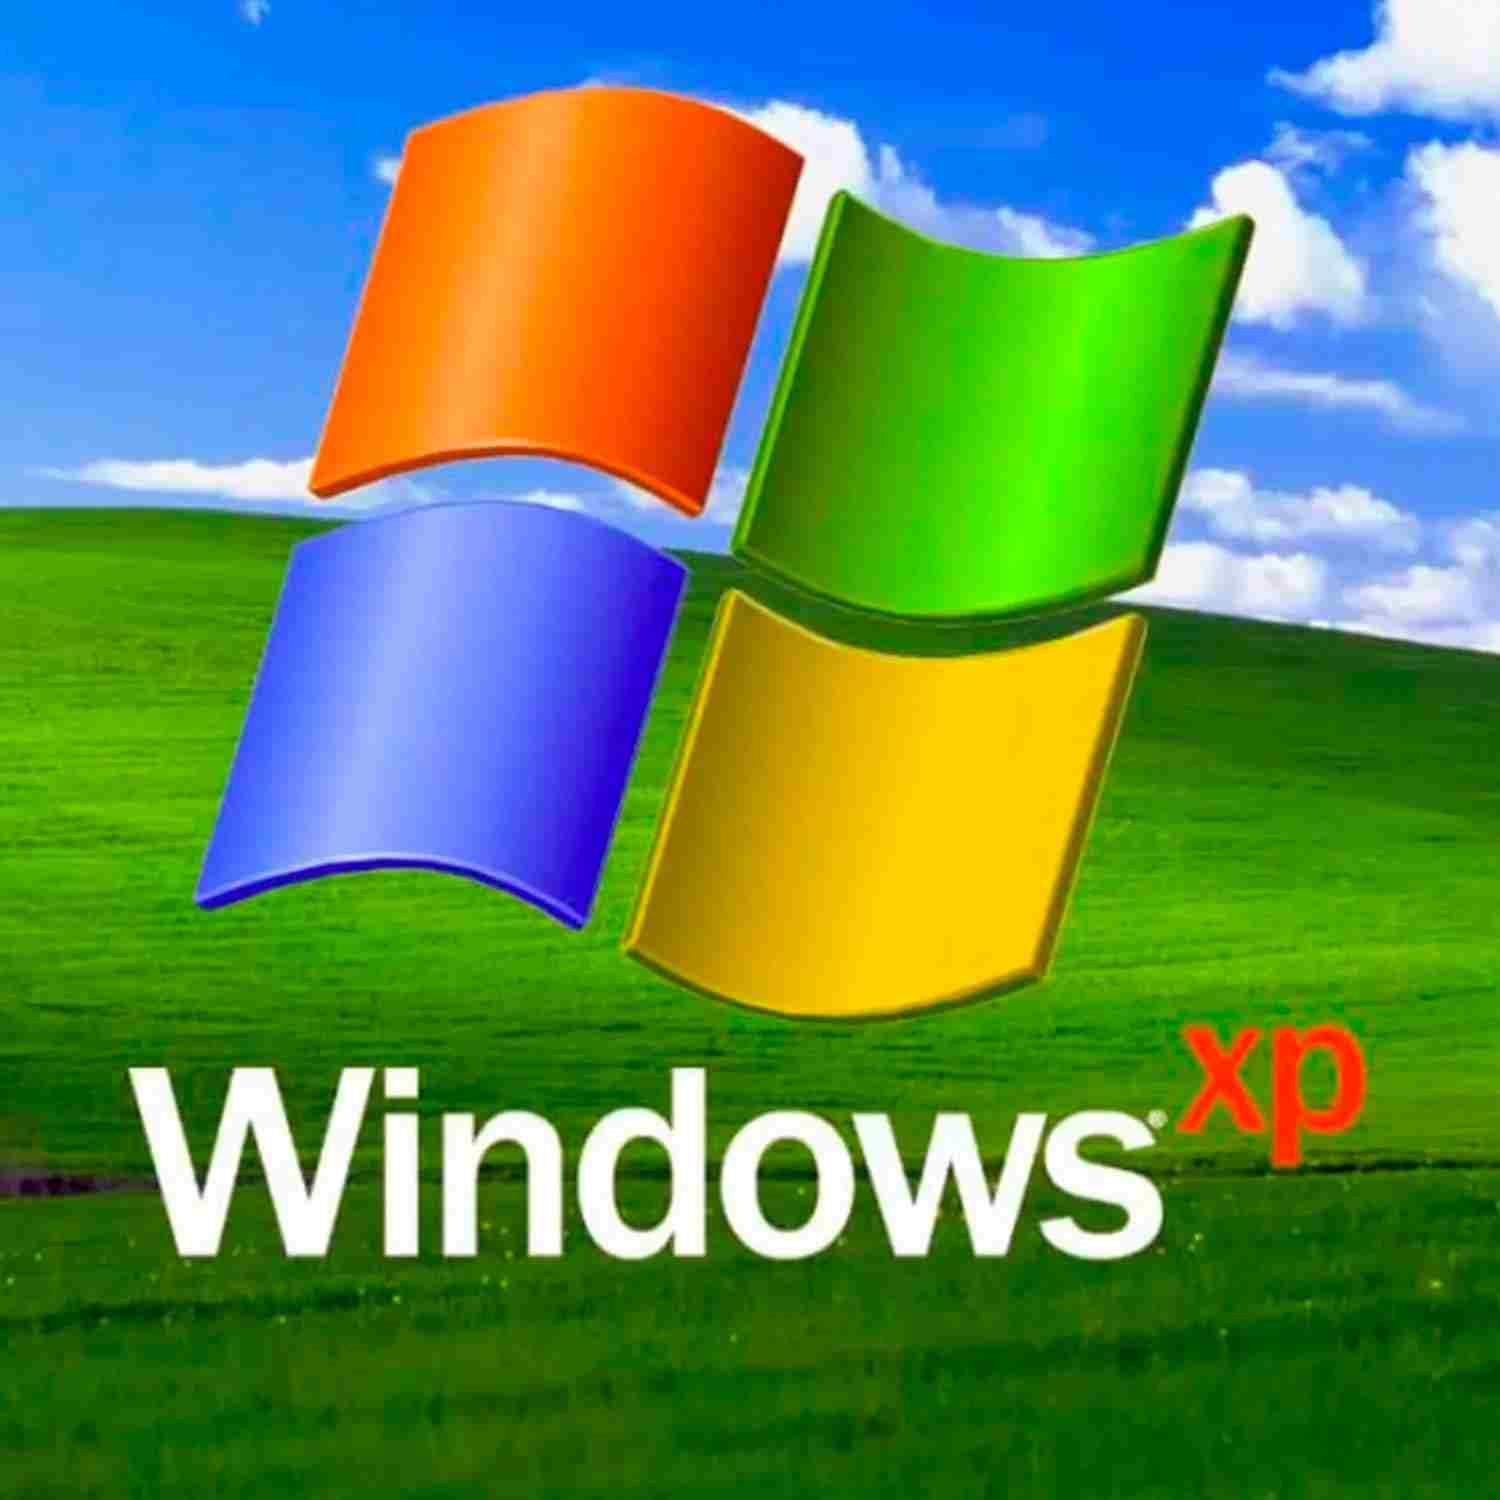 Hackers descifran algoritmo de activación de Windows… XP